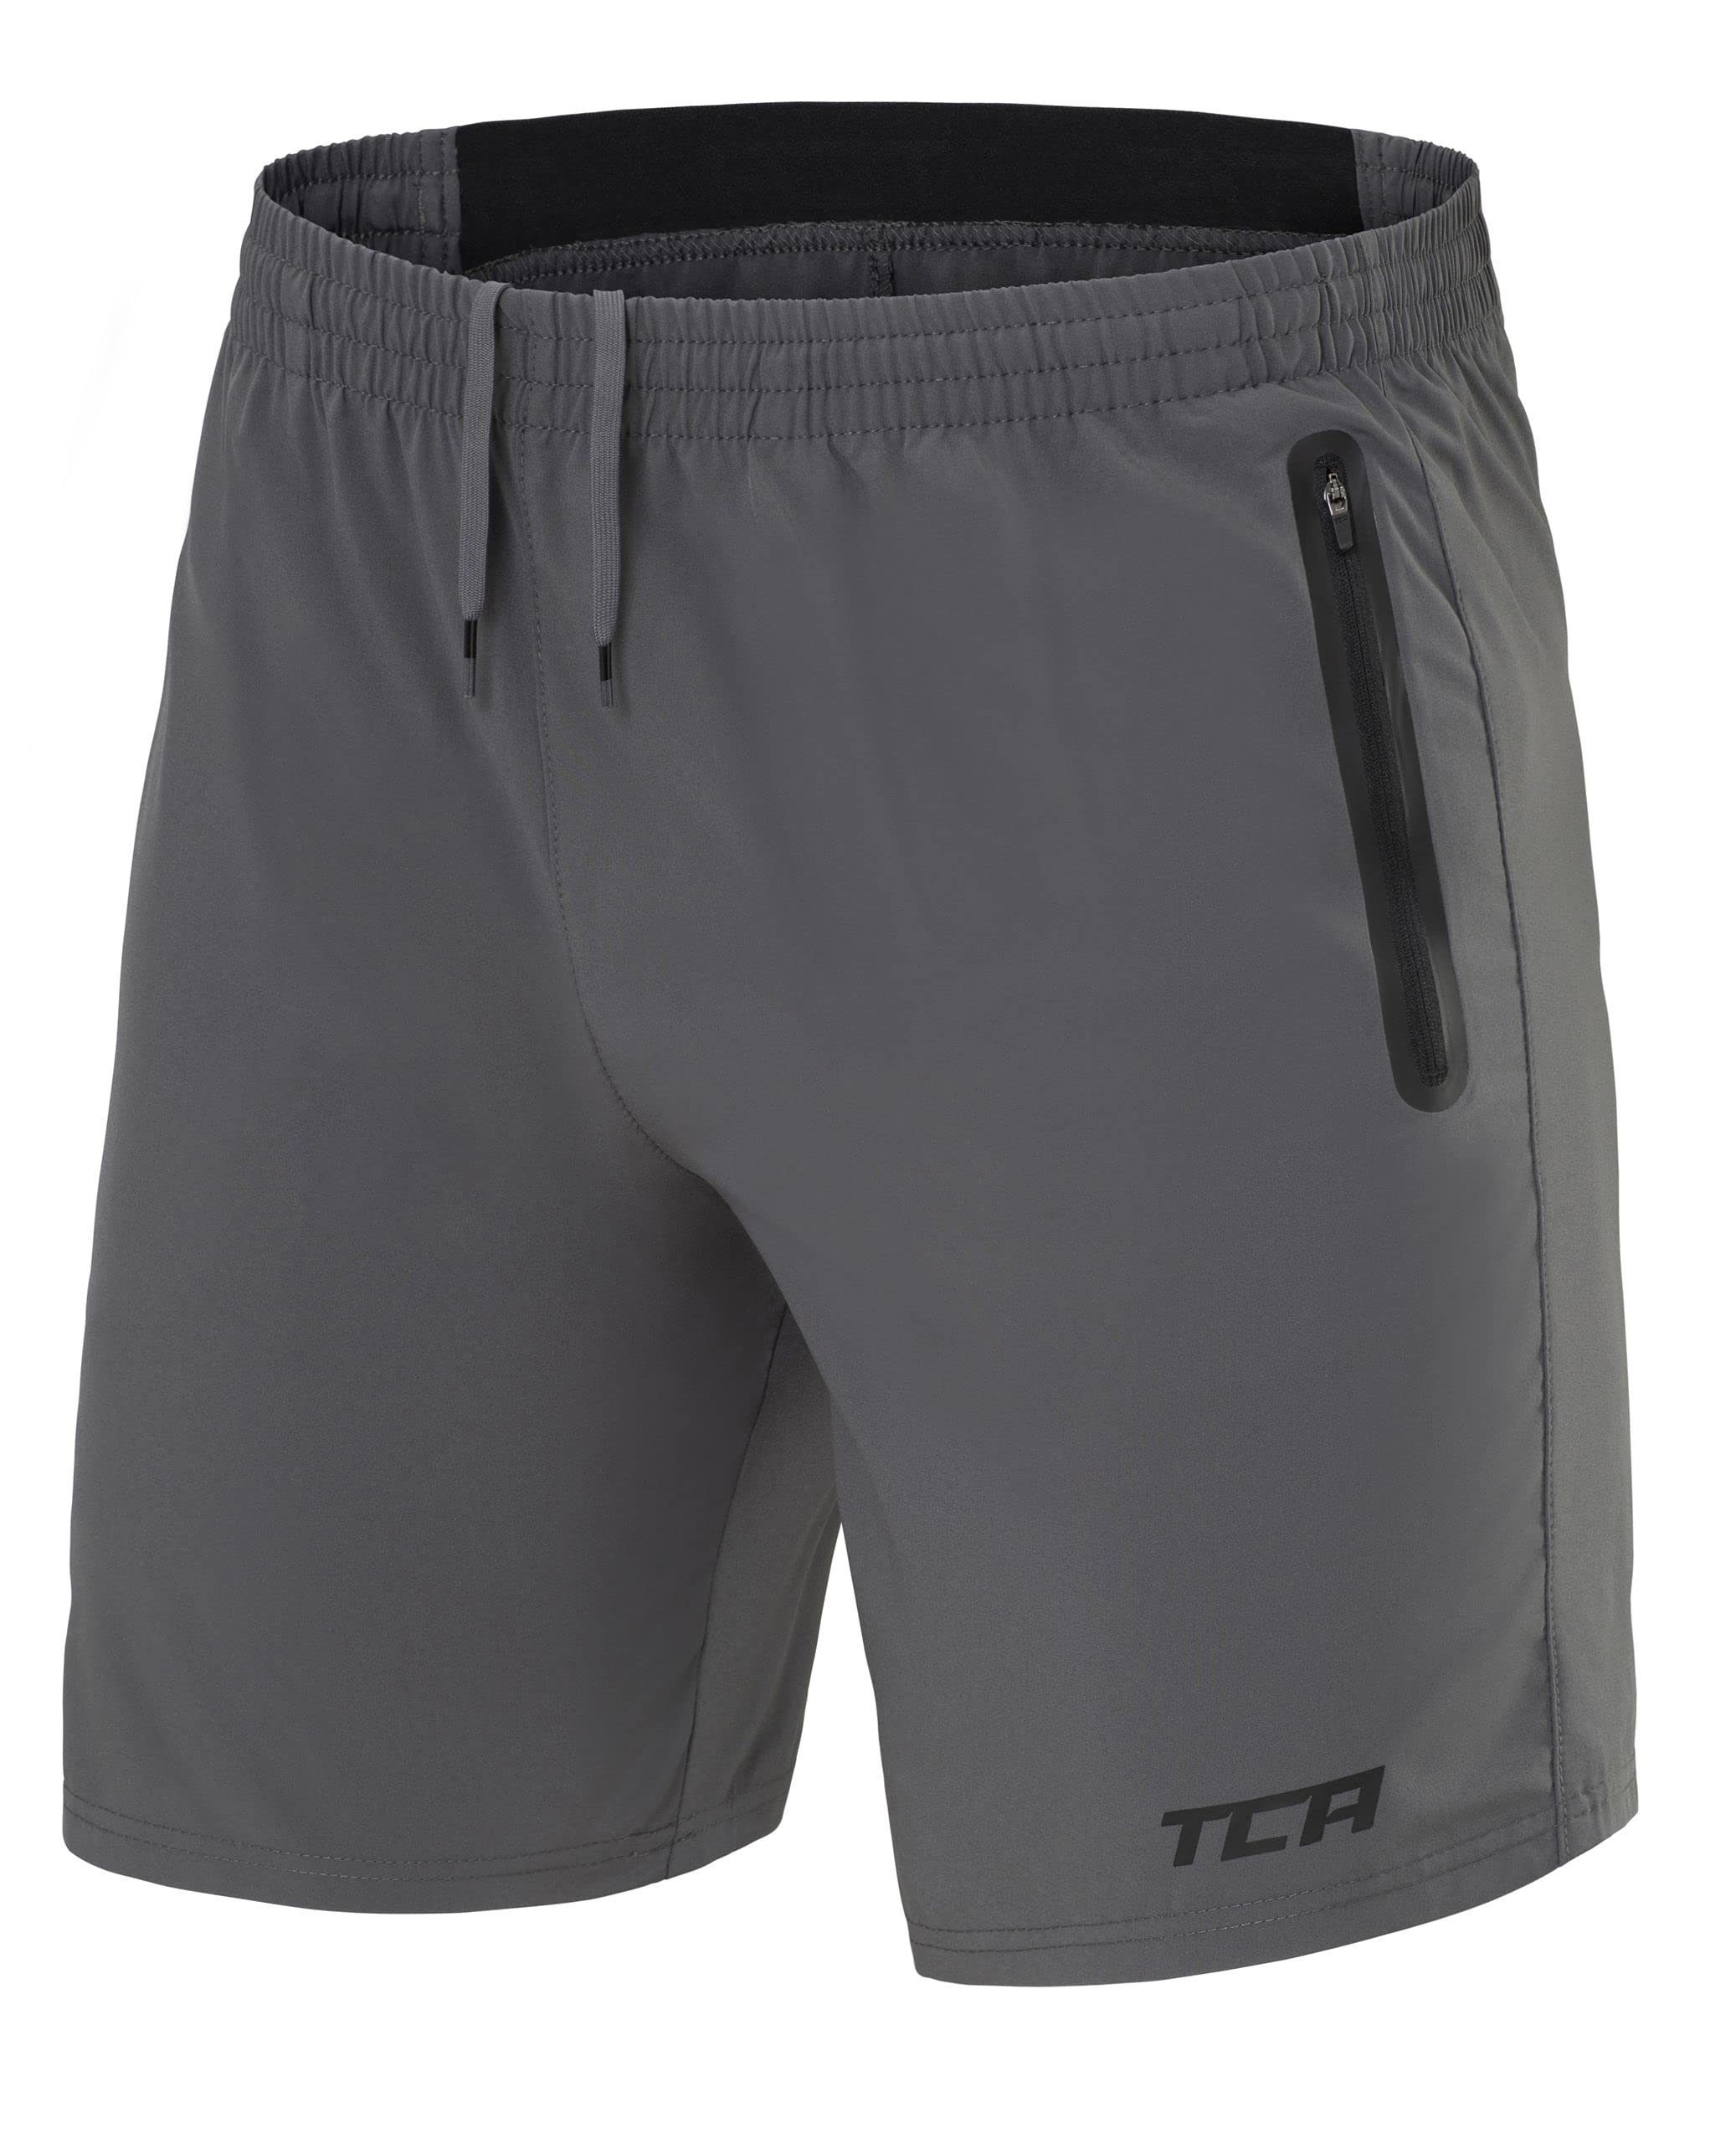 TCA Trainingsshorts TCA Herren Elite Tech Laufhose mit Reißverschlusstaschen - Grau, XXL